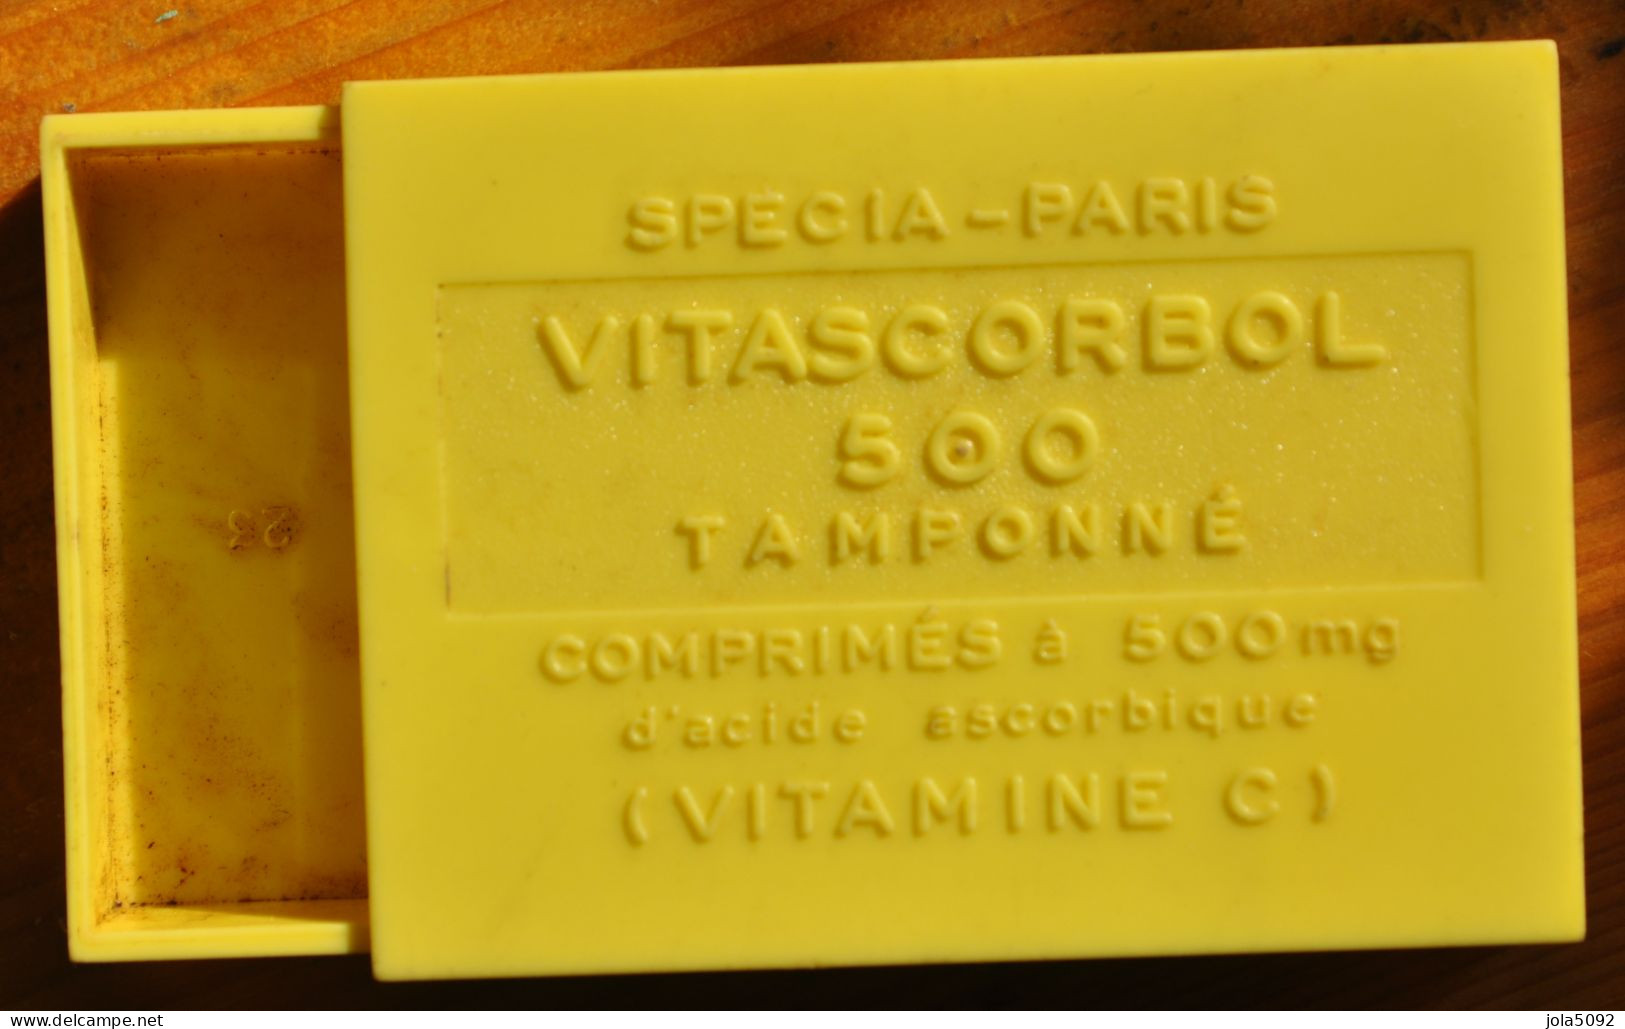 Ancienne Boite En Plastique Pastilles VITASCORBOL 500 - Vitamines C - SPECIA PARIS - Dosen